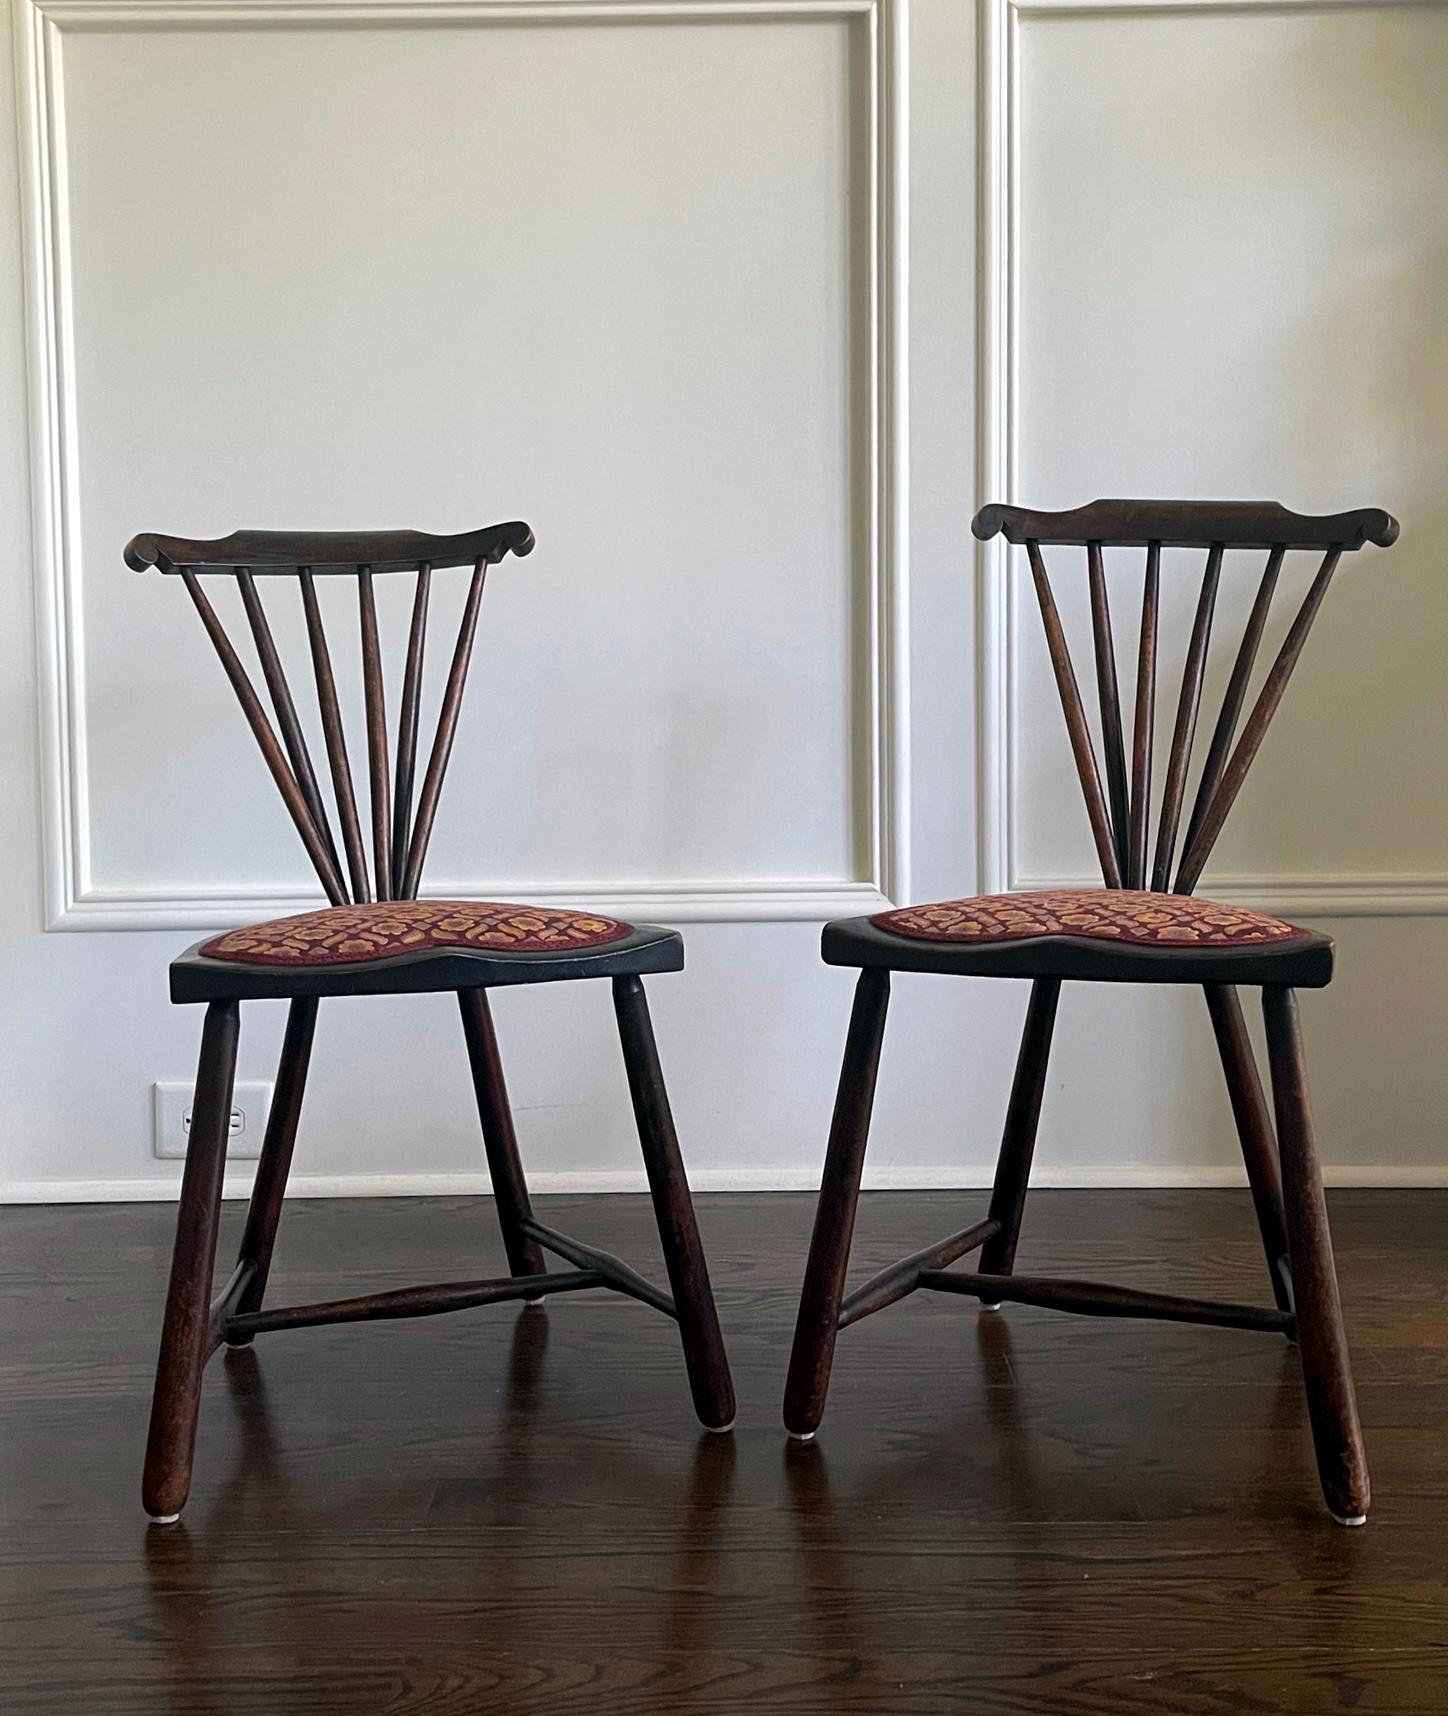 Nous vous proposons une rare paire de chaises originales à dossier en éventail conçues par Adolf Loos (1870-1933) vers 1908-20s. S'inscrivant dans le mouvement de la Sécession viennoise, ces chaises affichent une silouette moderne apparue au début